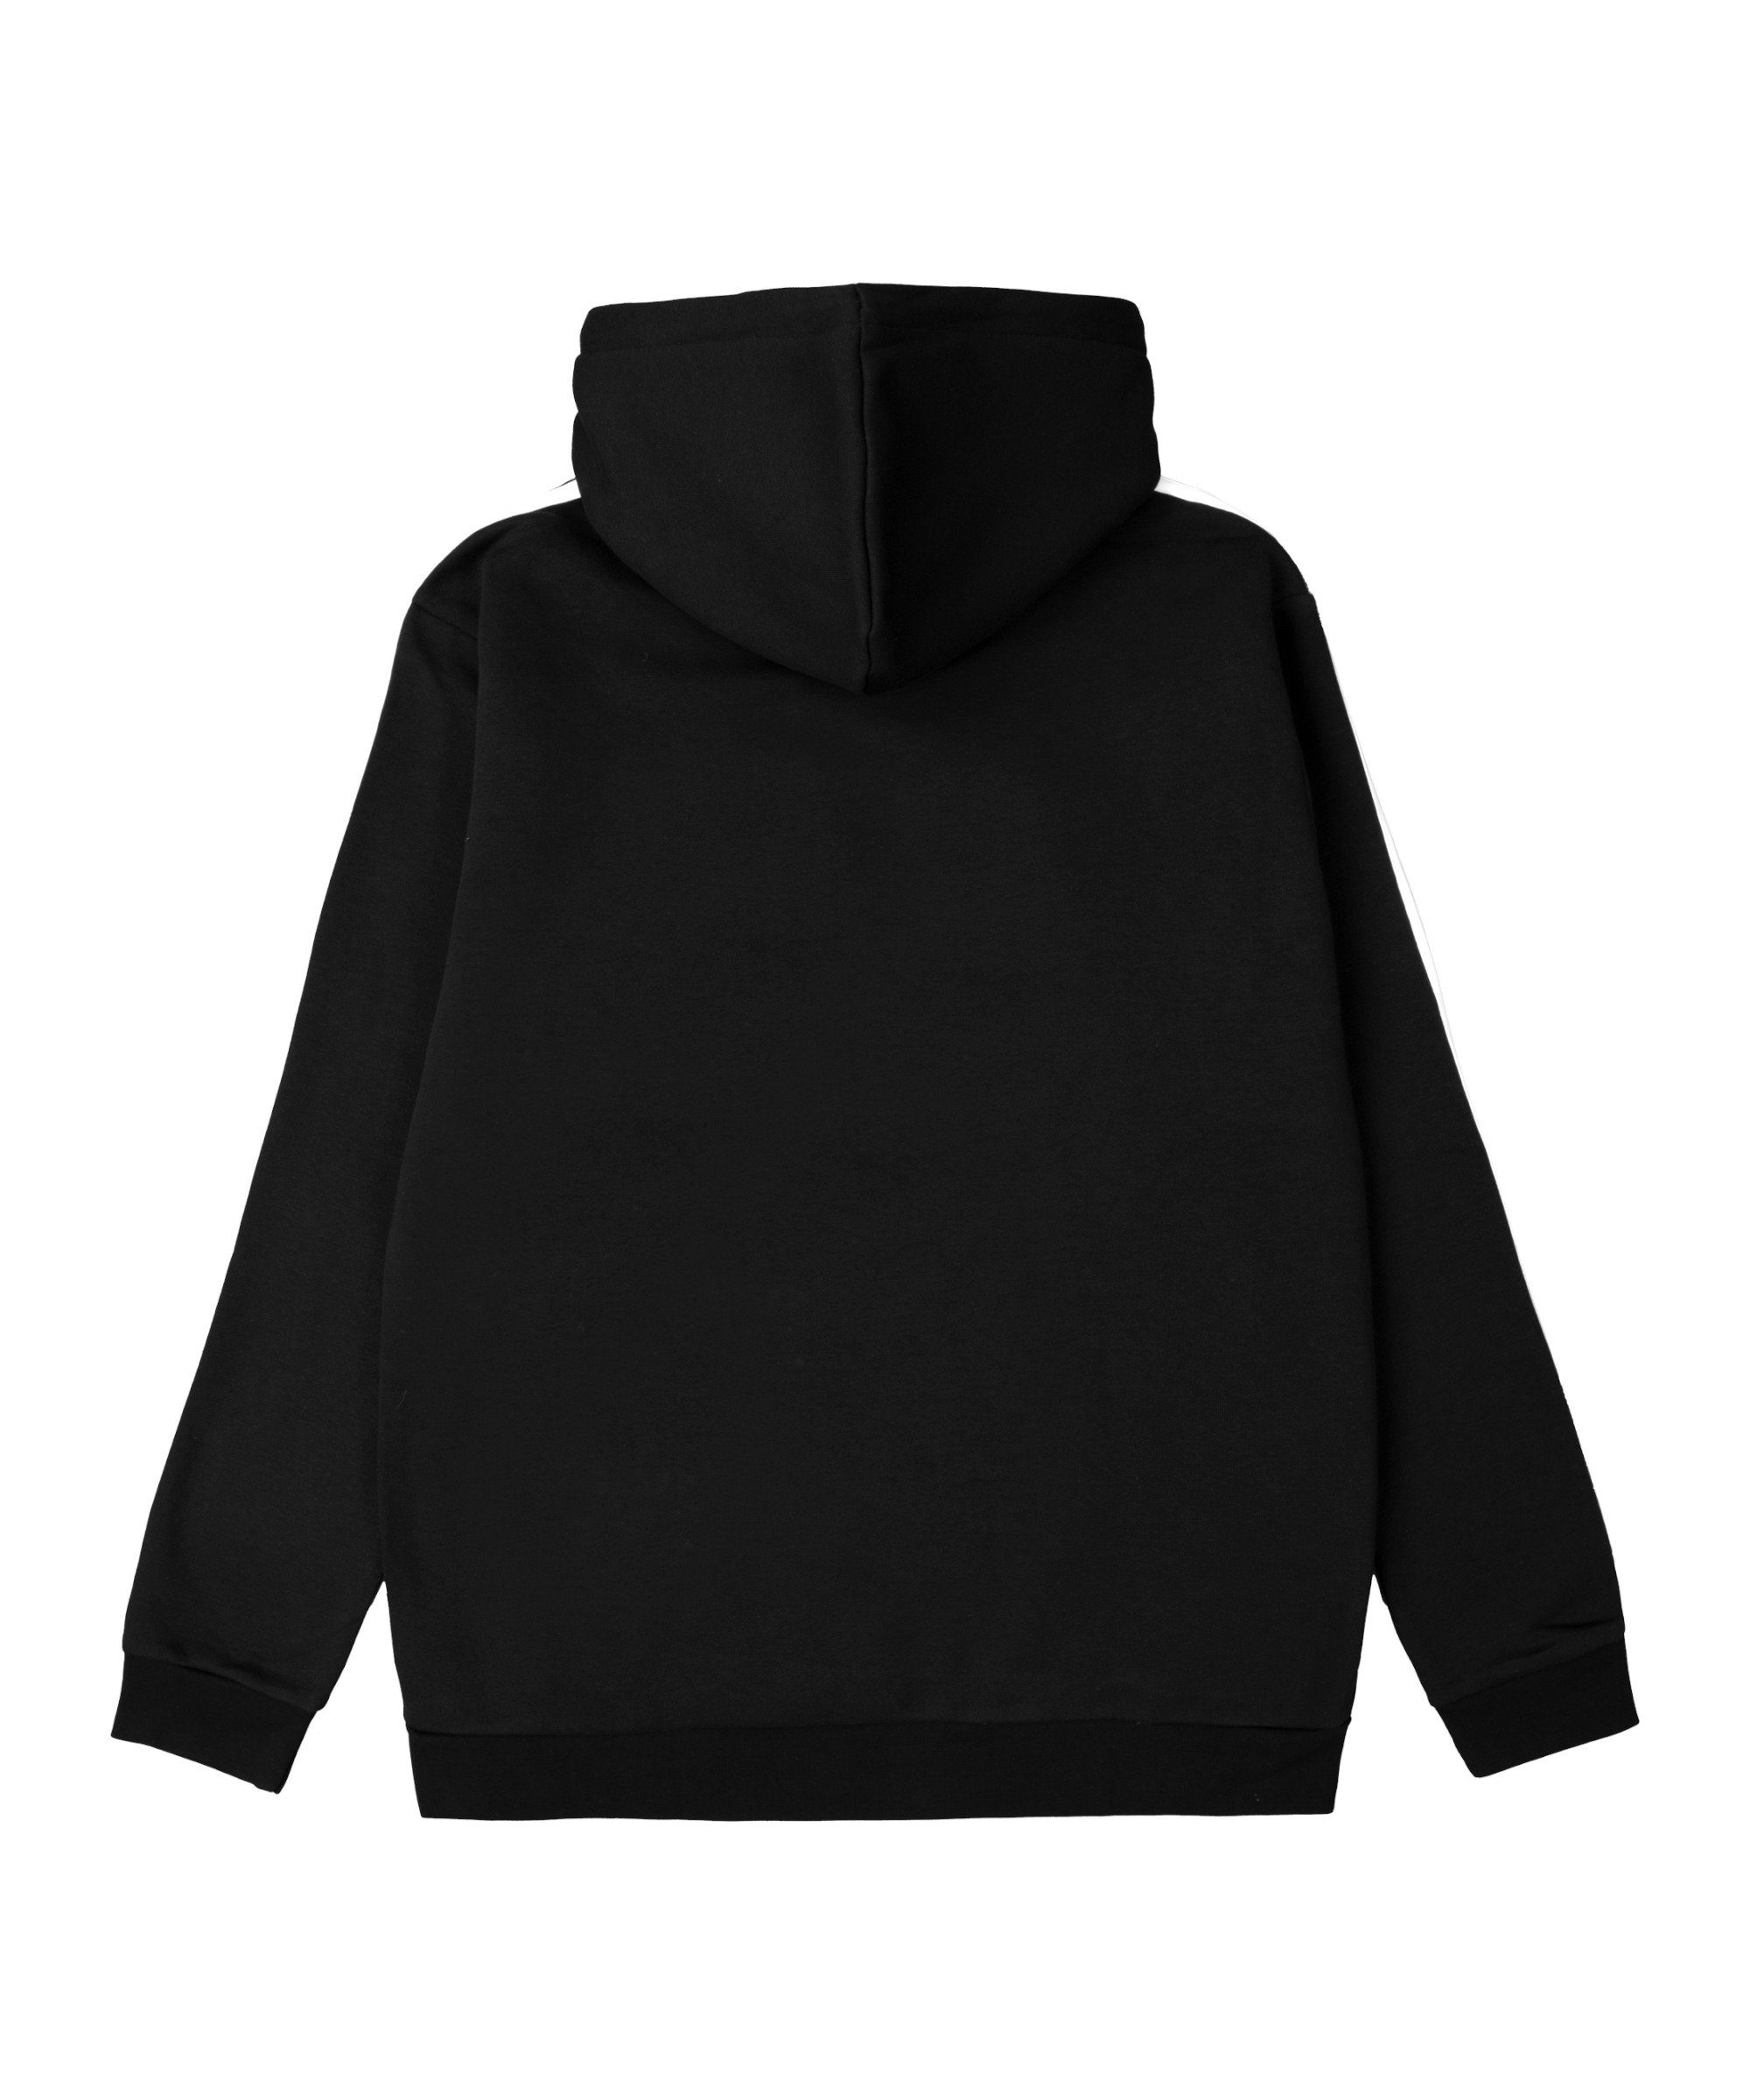 adidas Originals Sweatshirt 3S Hoody schwarz